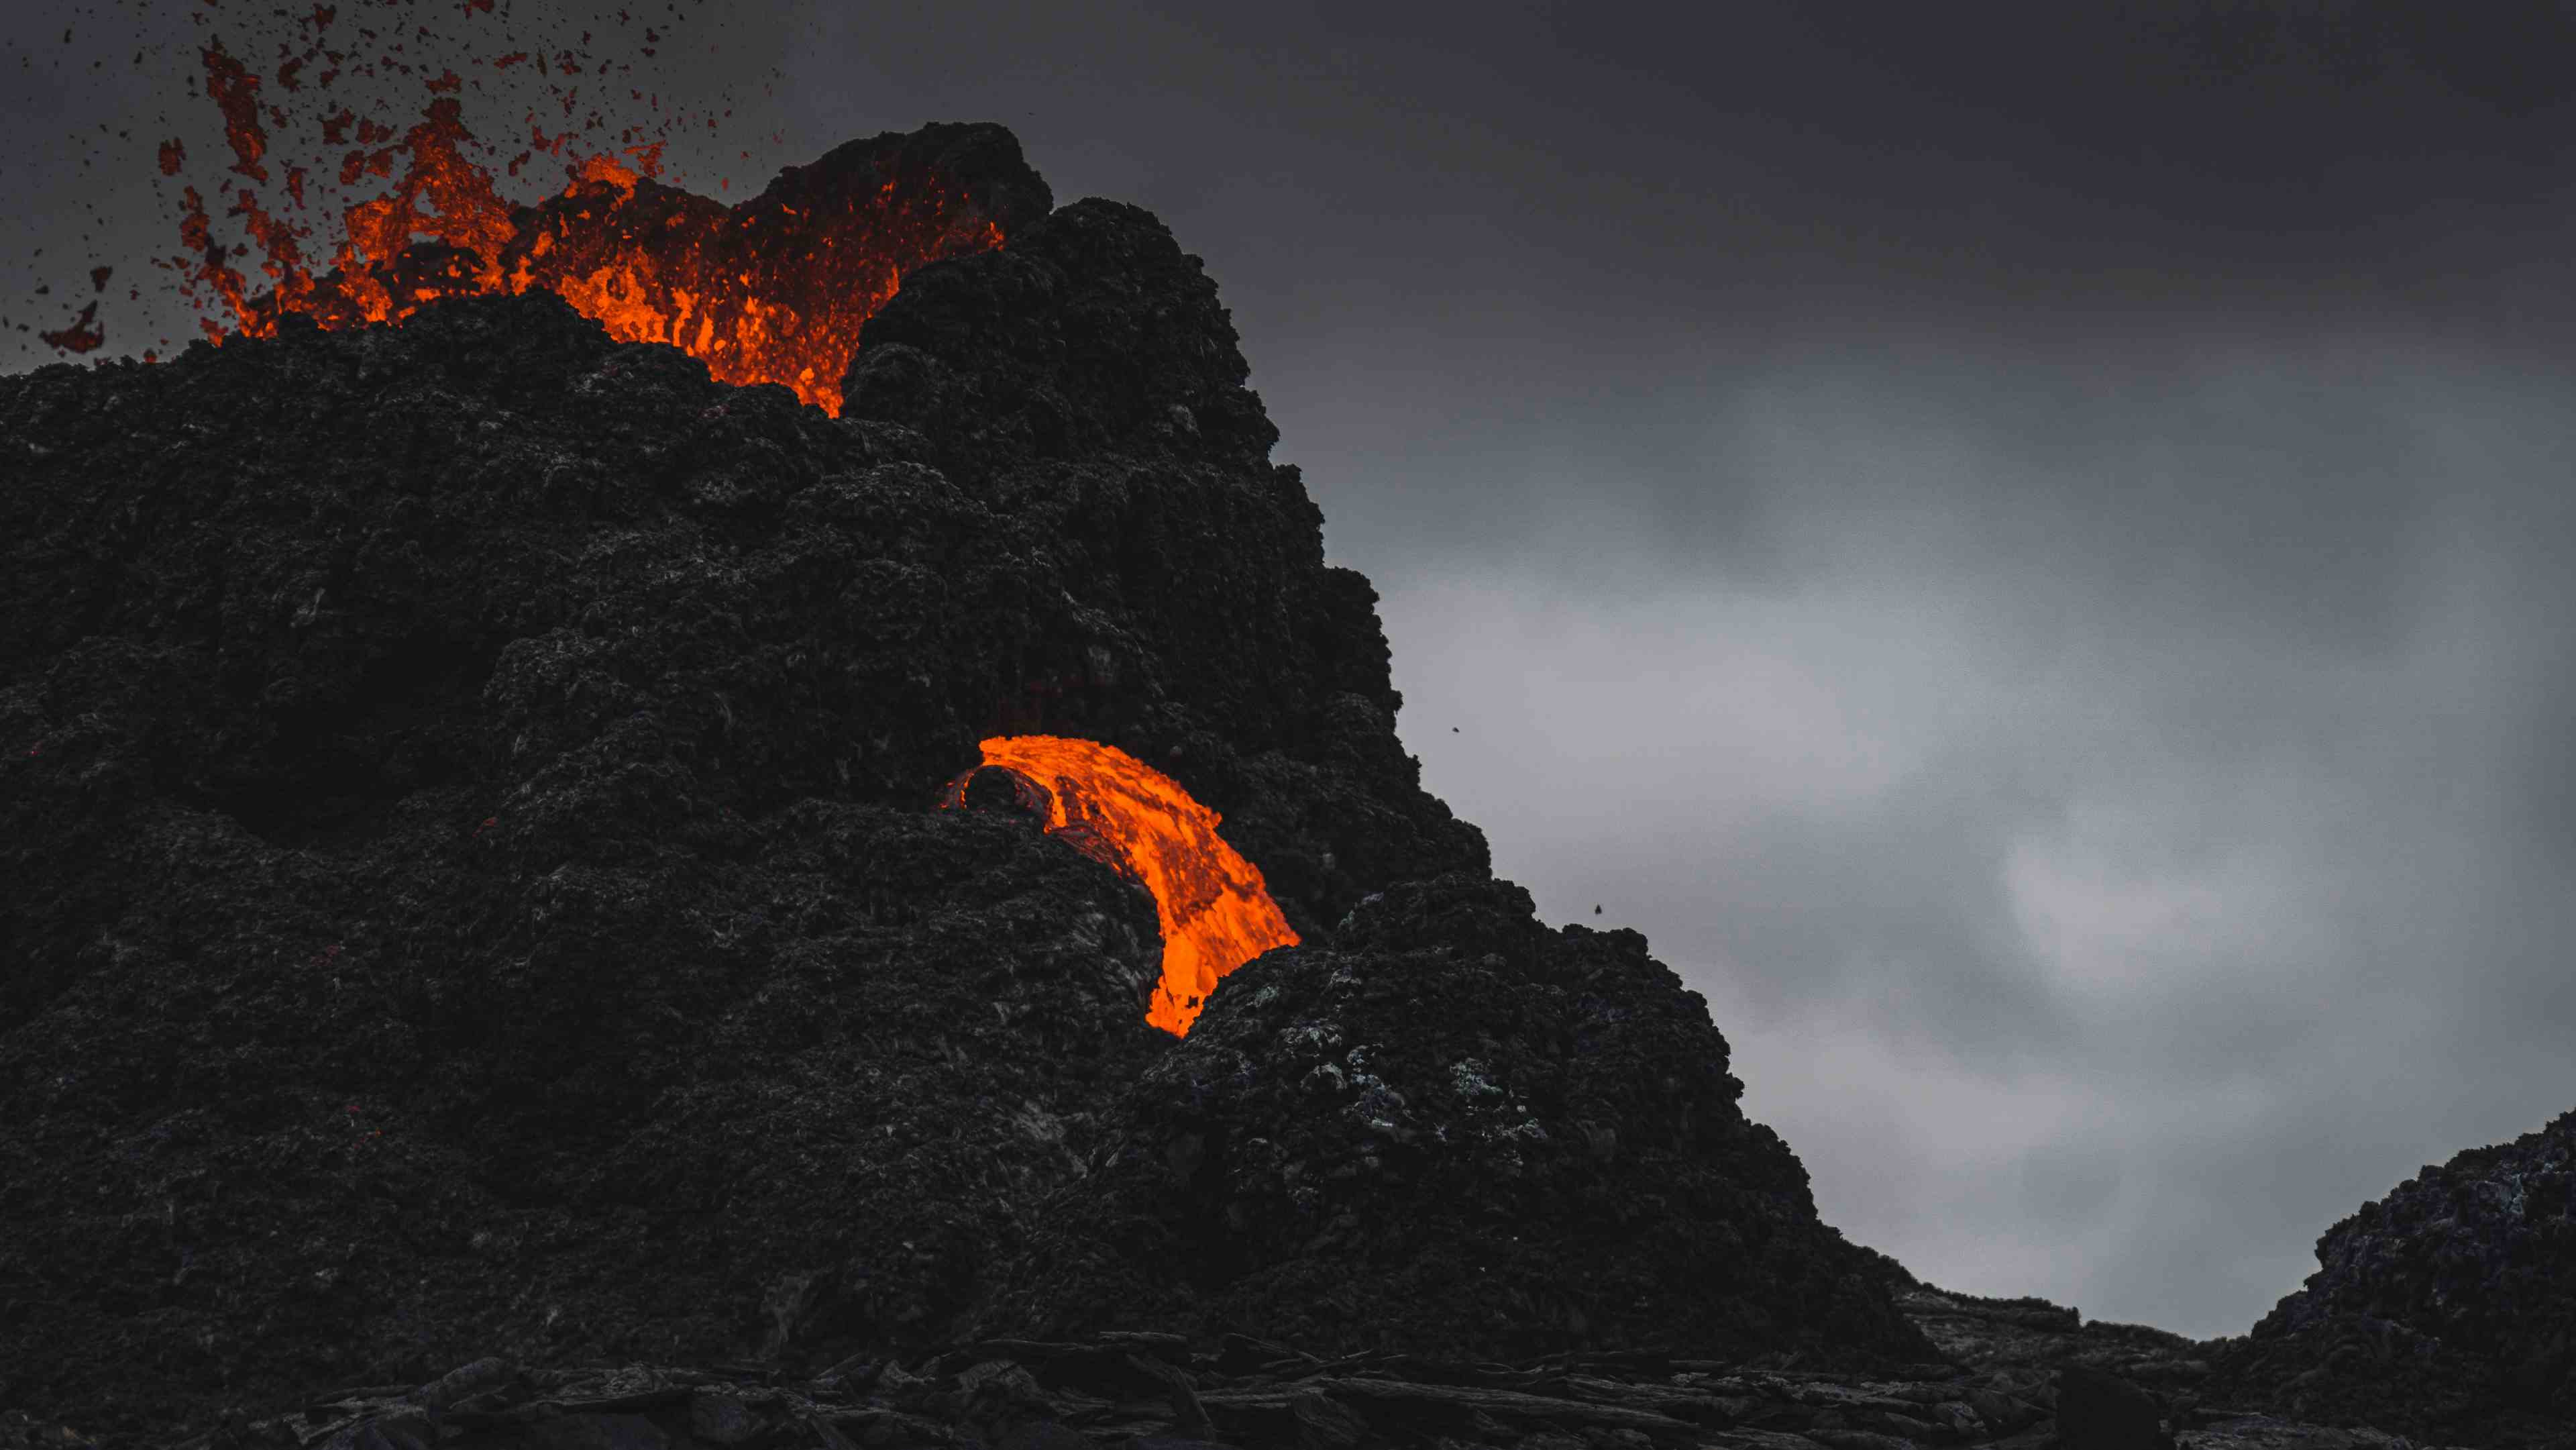 zz Geldingardalur Volcano Hike from Reykjavik